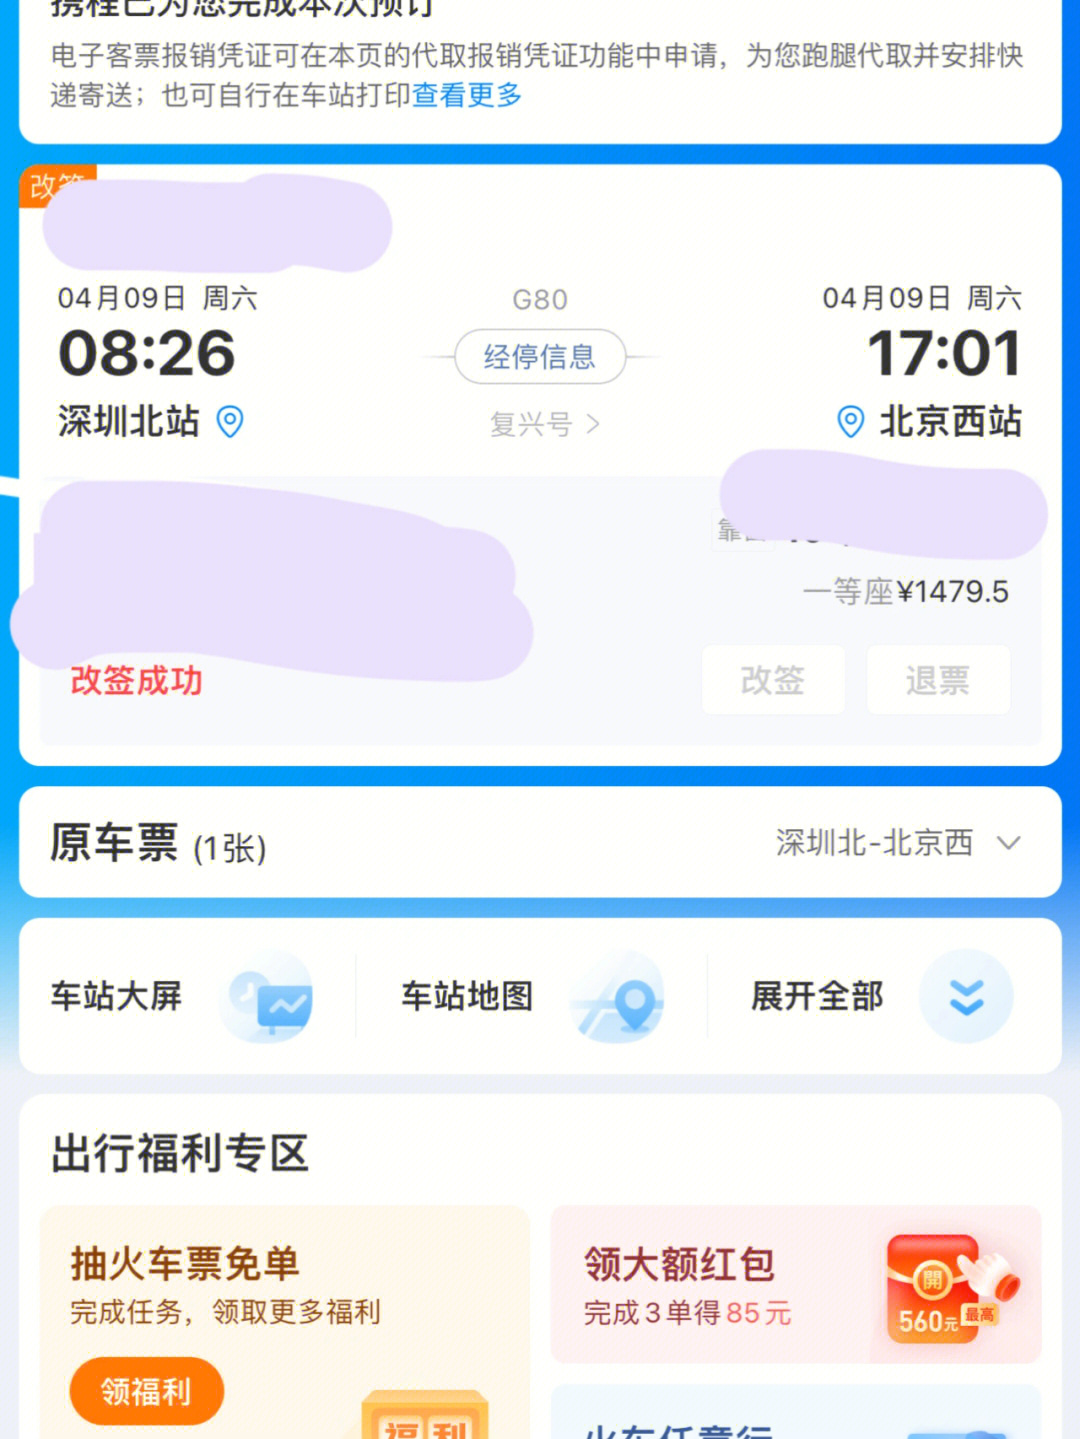 0408 晚上十来点发现北京健康宝弹窗3消失了,立刻买了第二天的高铁票